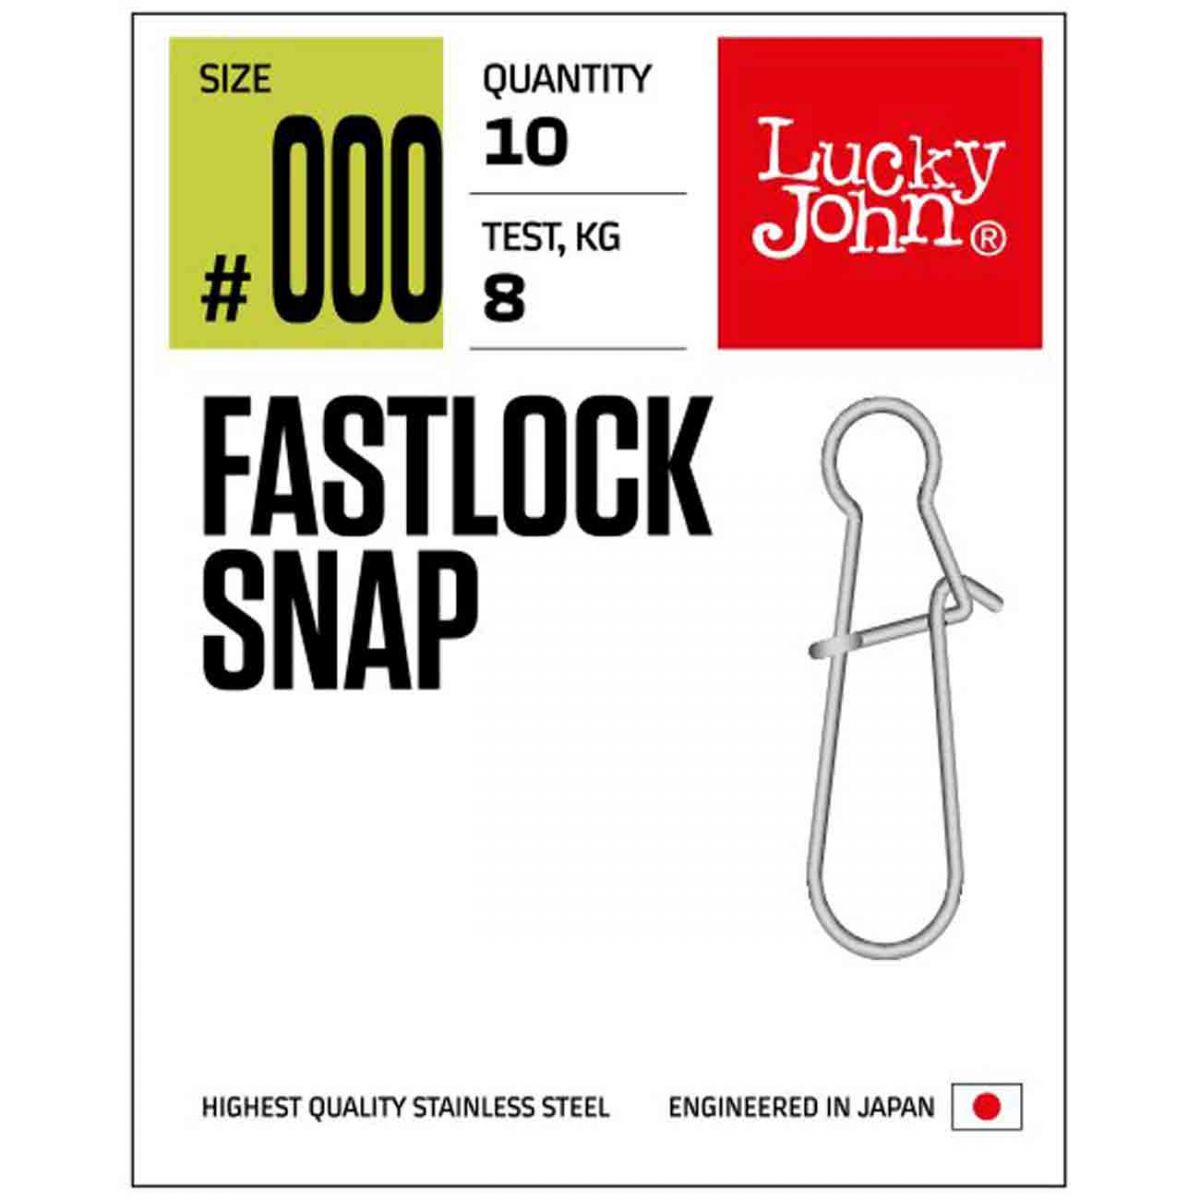 Lucky John 5111 Fastlock Snap En pratik ve hızlı takılıp çıkartılan klips